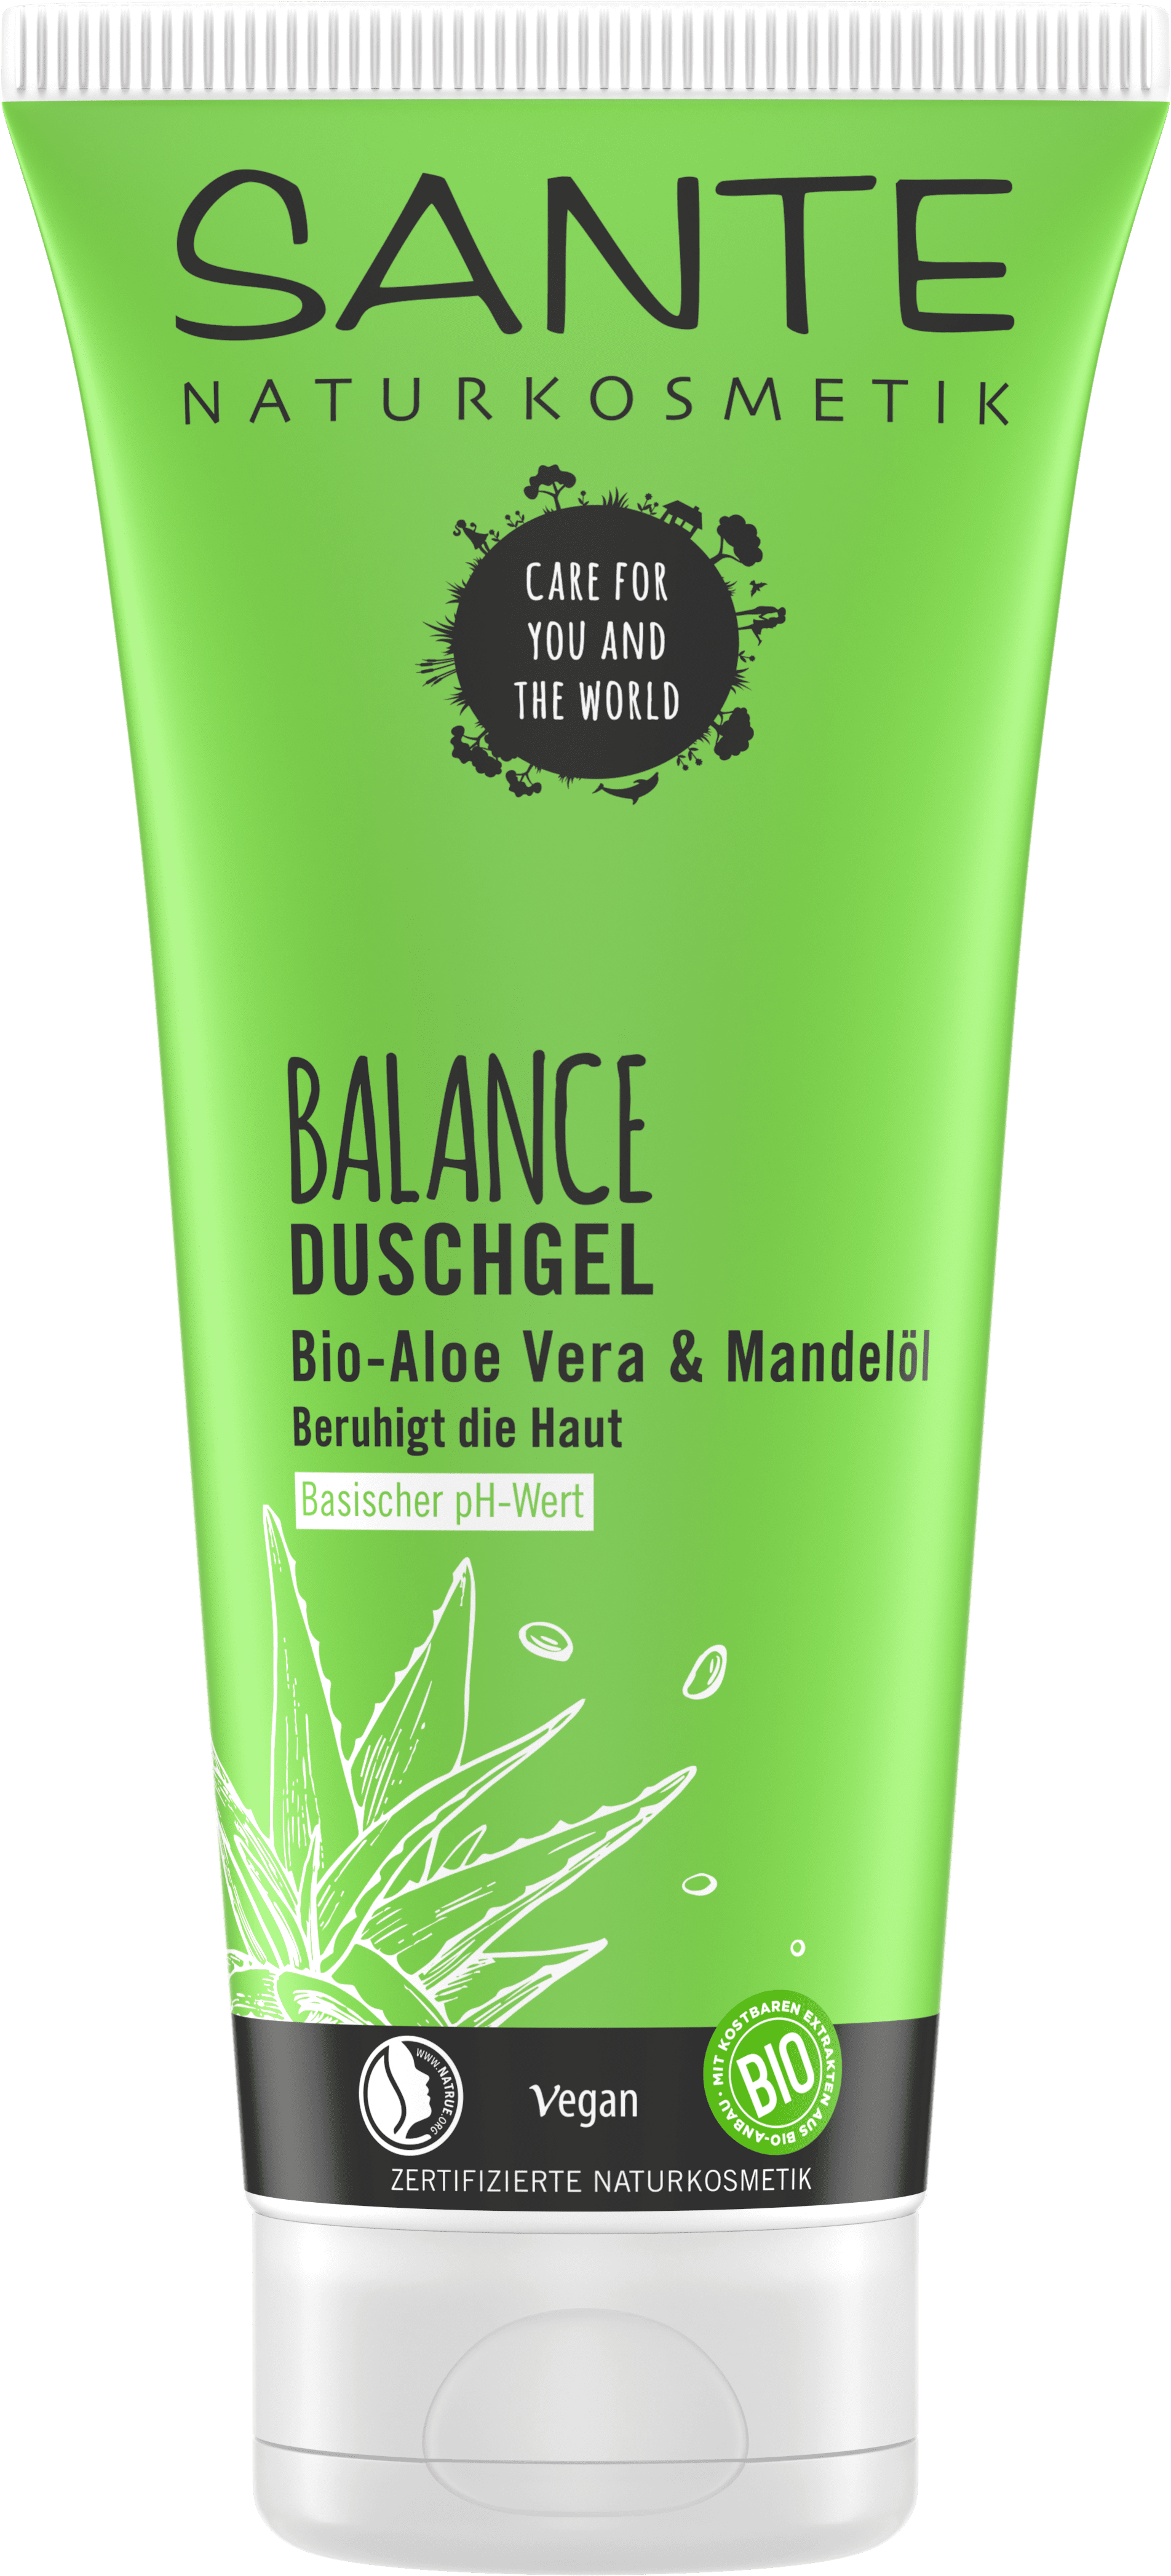 BALANCE | Duschgel SANTE Naturkosmetik